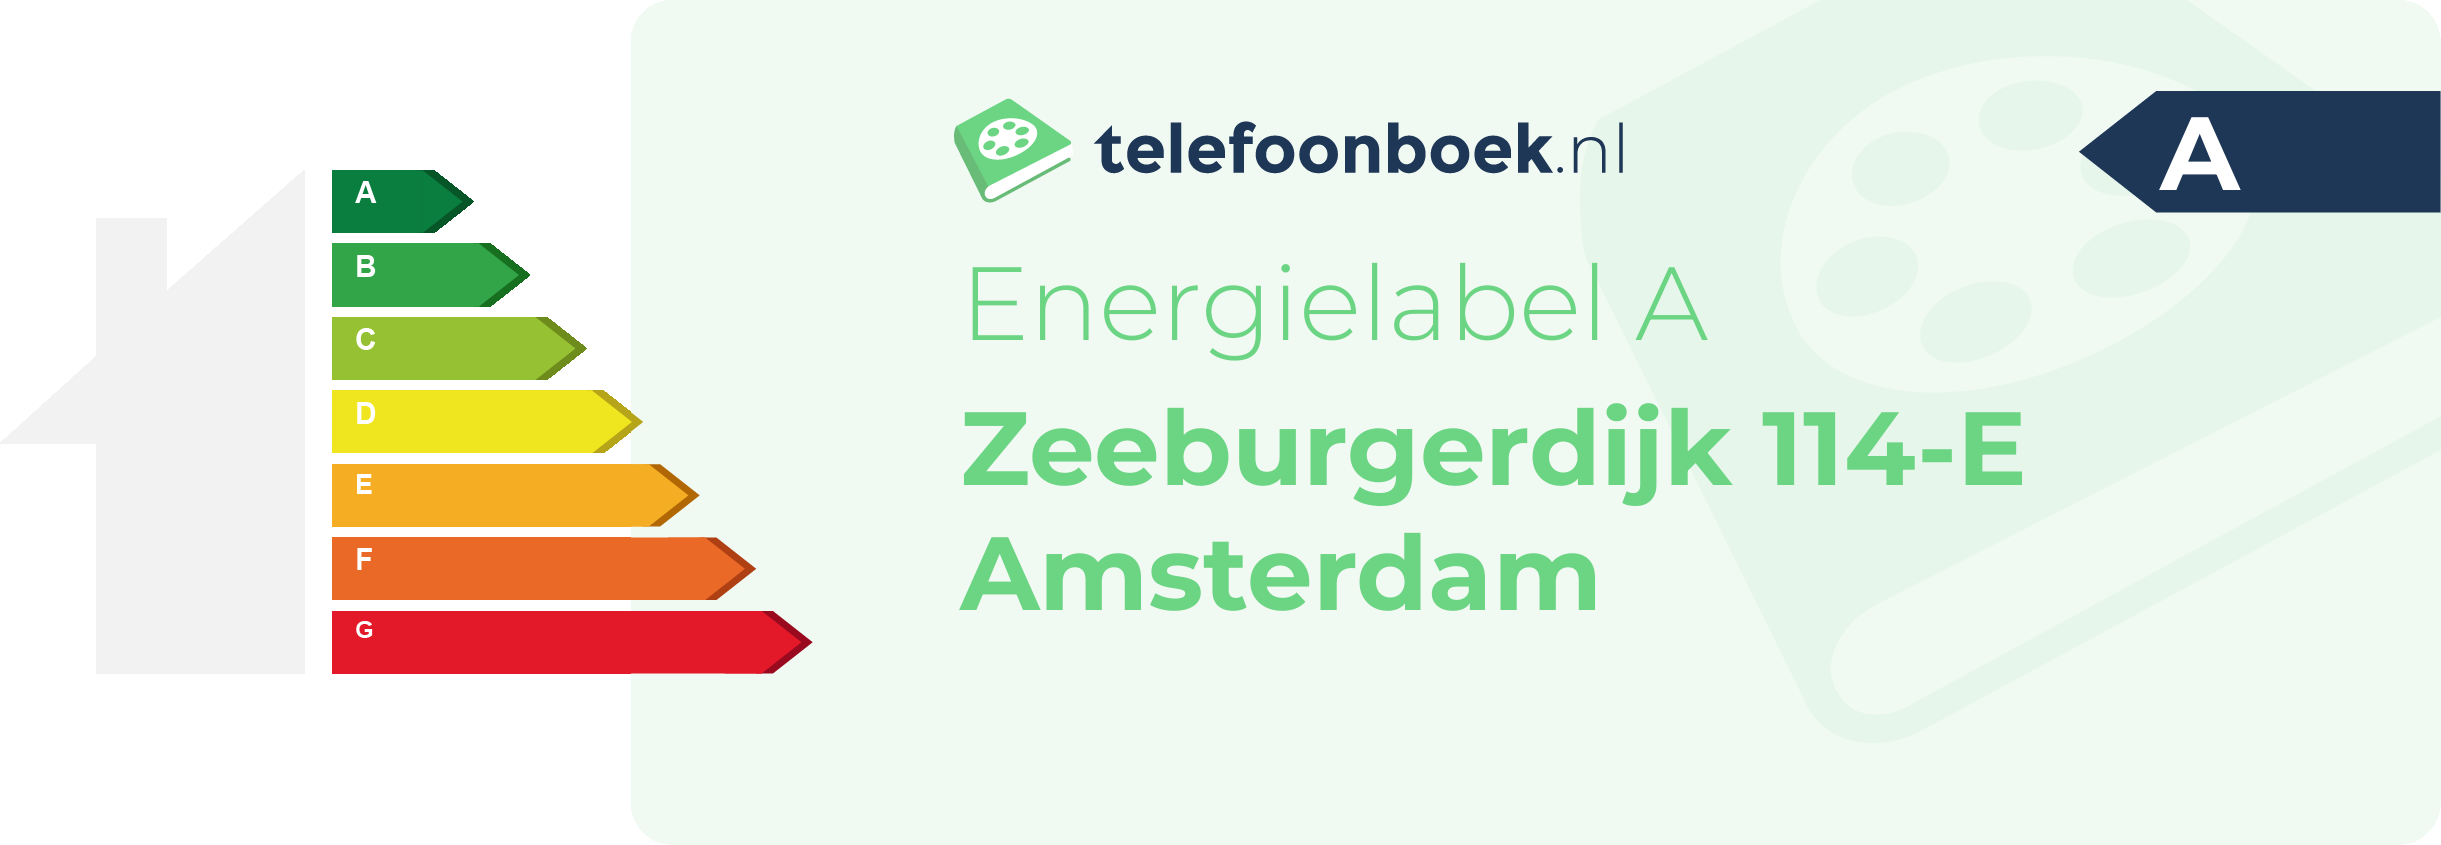 Energielabel Zeeburgerdijk 114-E Amsterdam